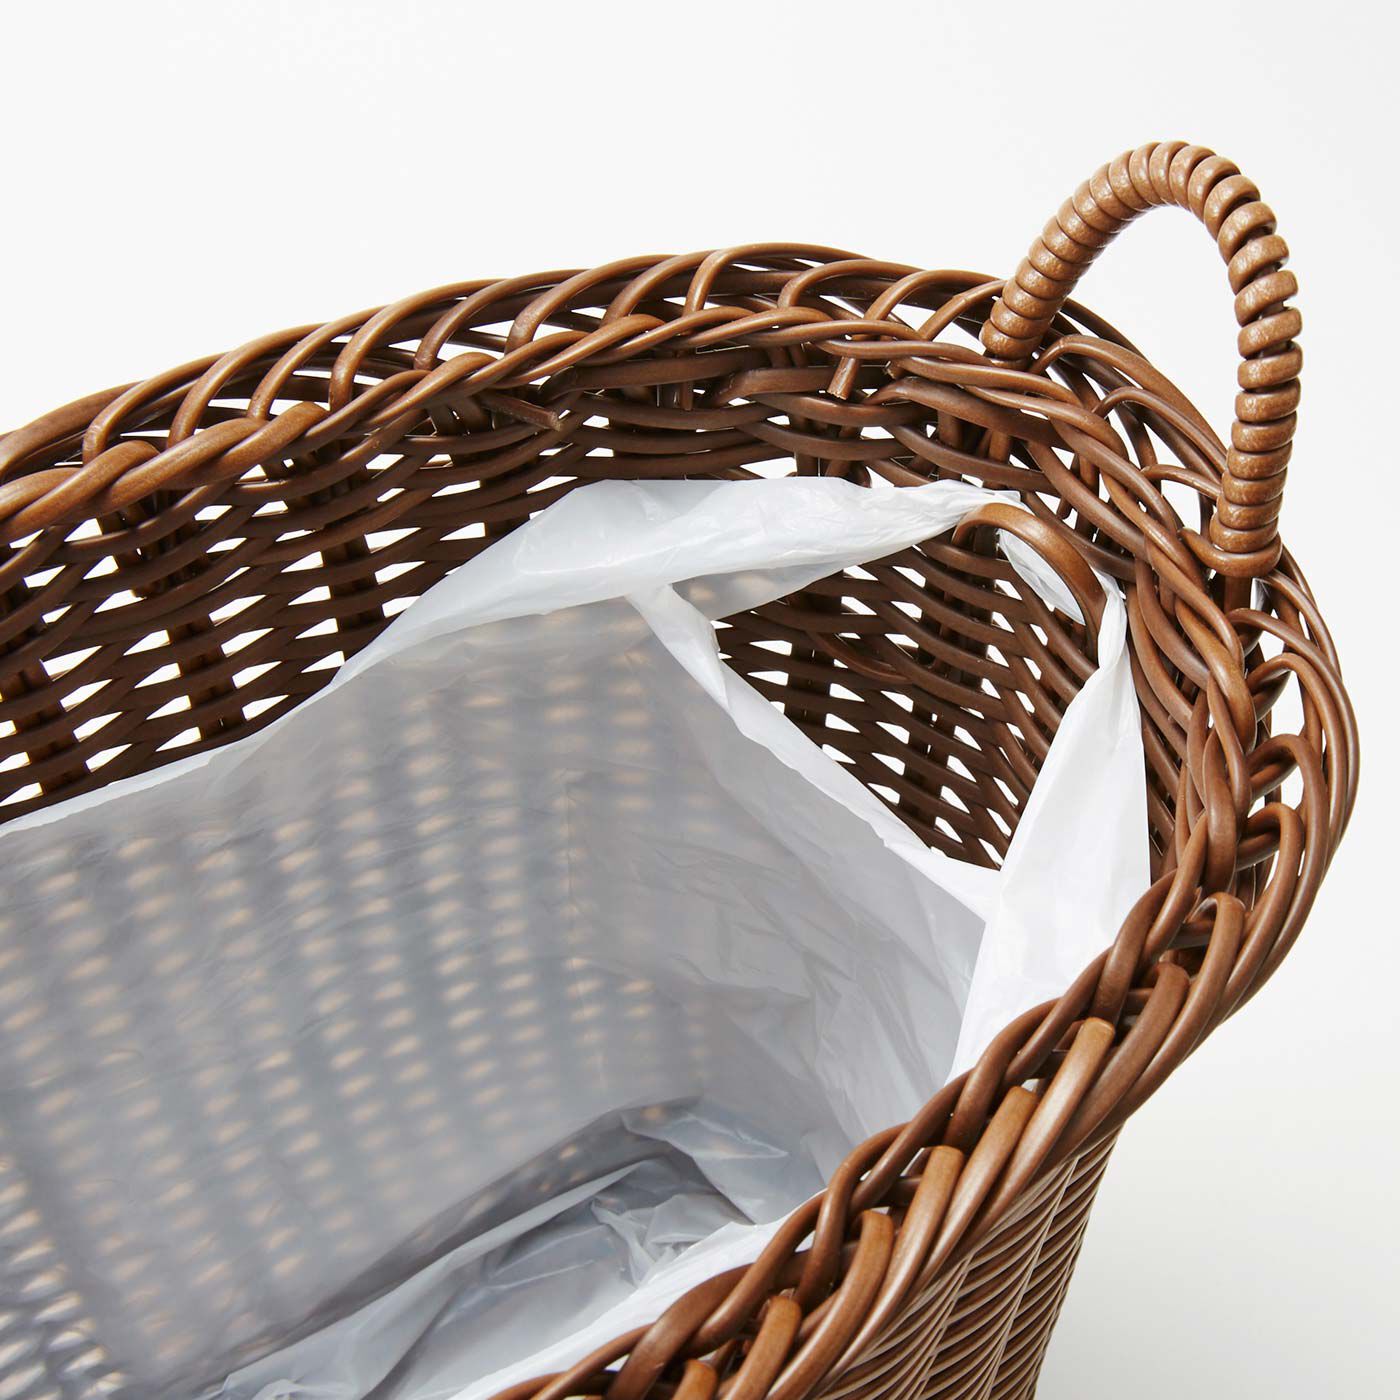 Real Stock|アンティークのようなたたずまい 手編みスリムバスケット|内側にはゴミ袋を引っ掛けられるフック付き。